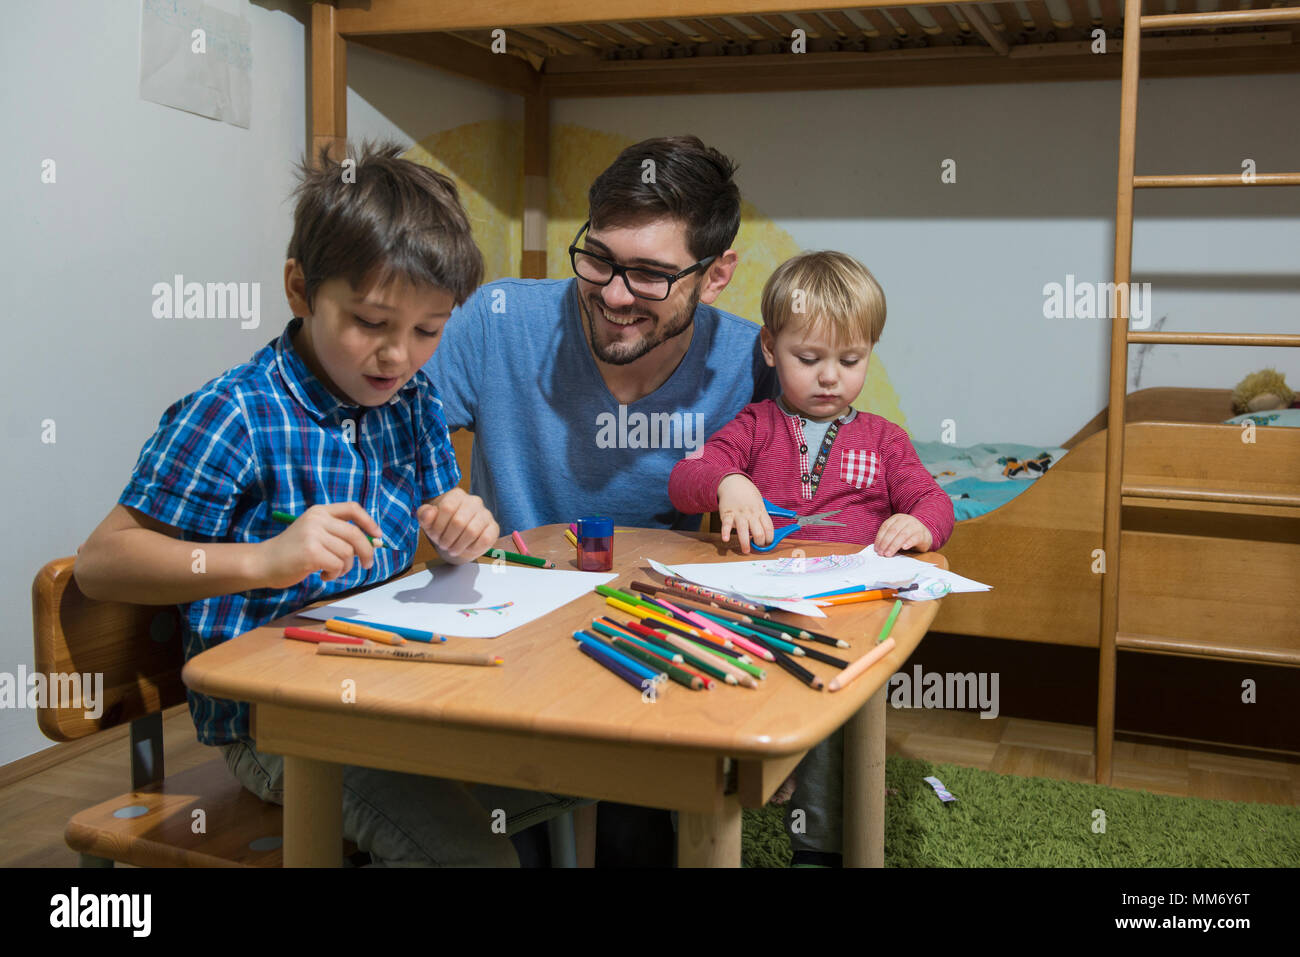 Genießen Brüder mit Buntstiften zu zeichnen, während Vater lächelt, München, Deutschland Stockfoto